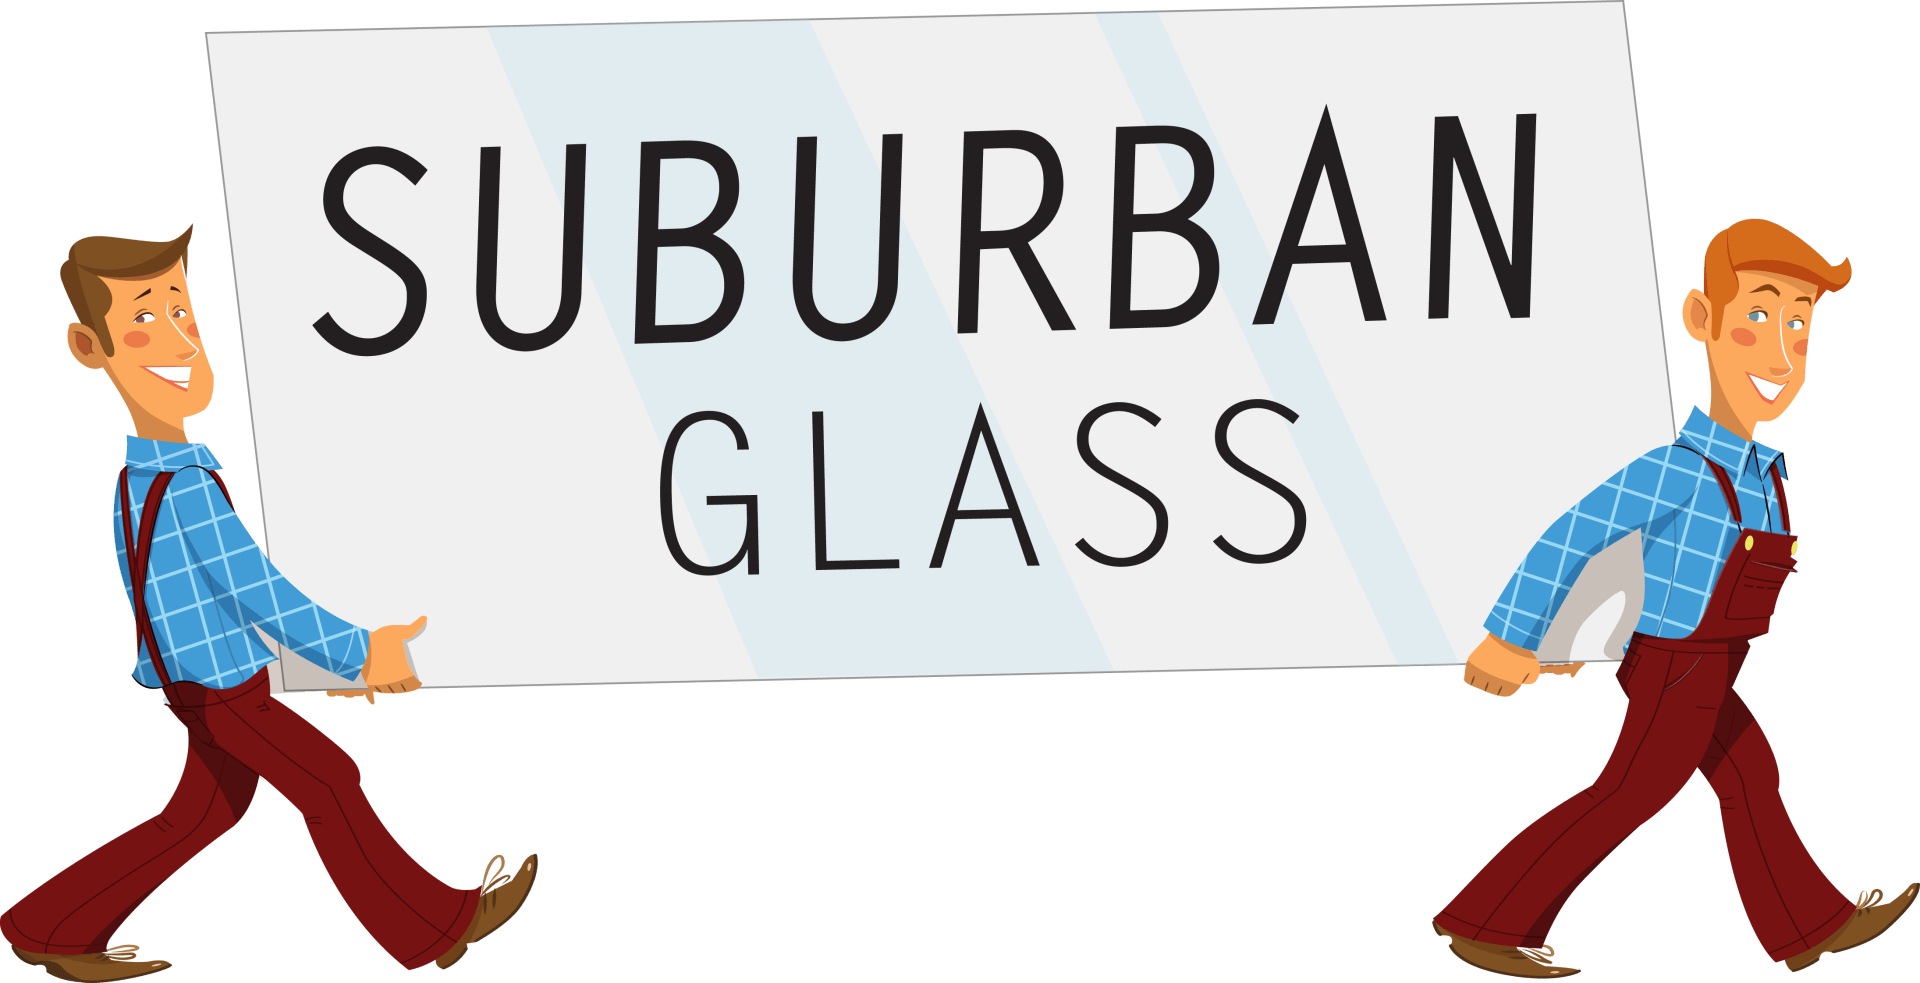 Suburban Glass | Central Islip, NY